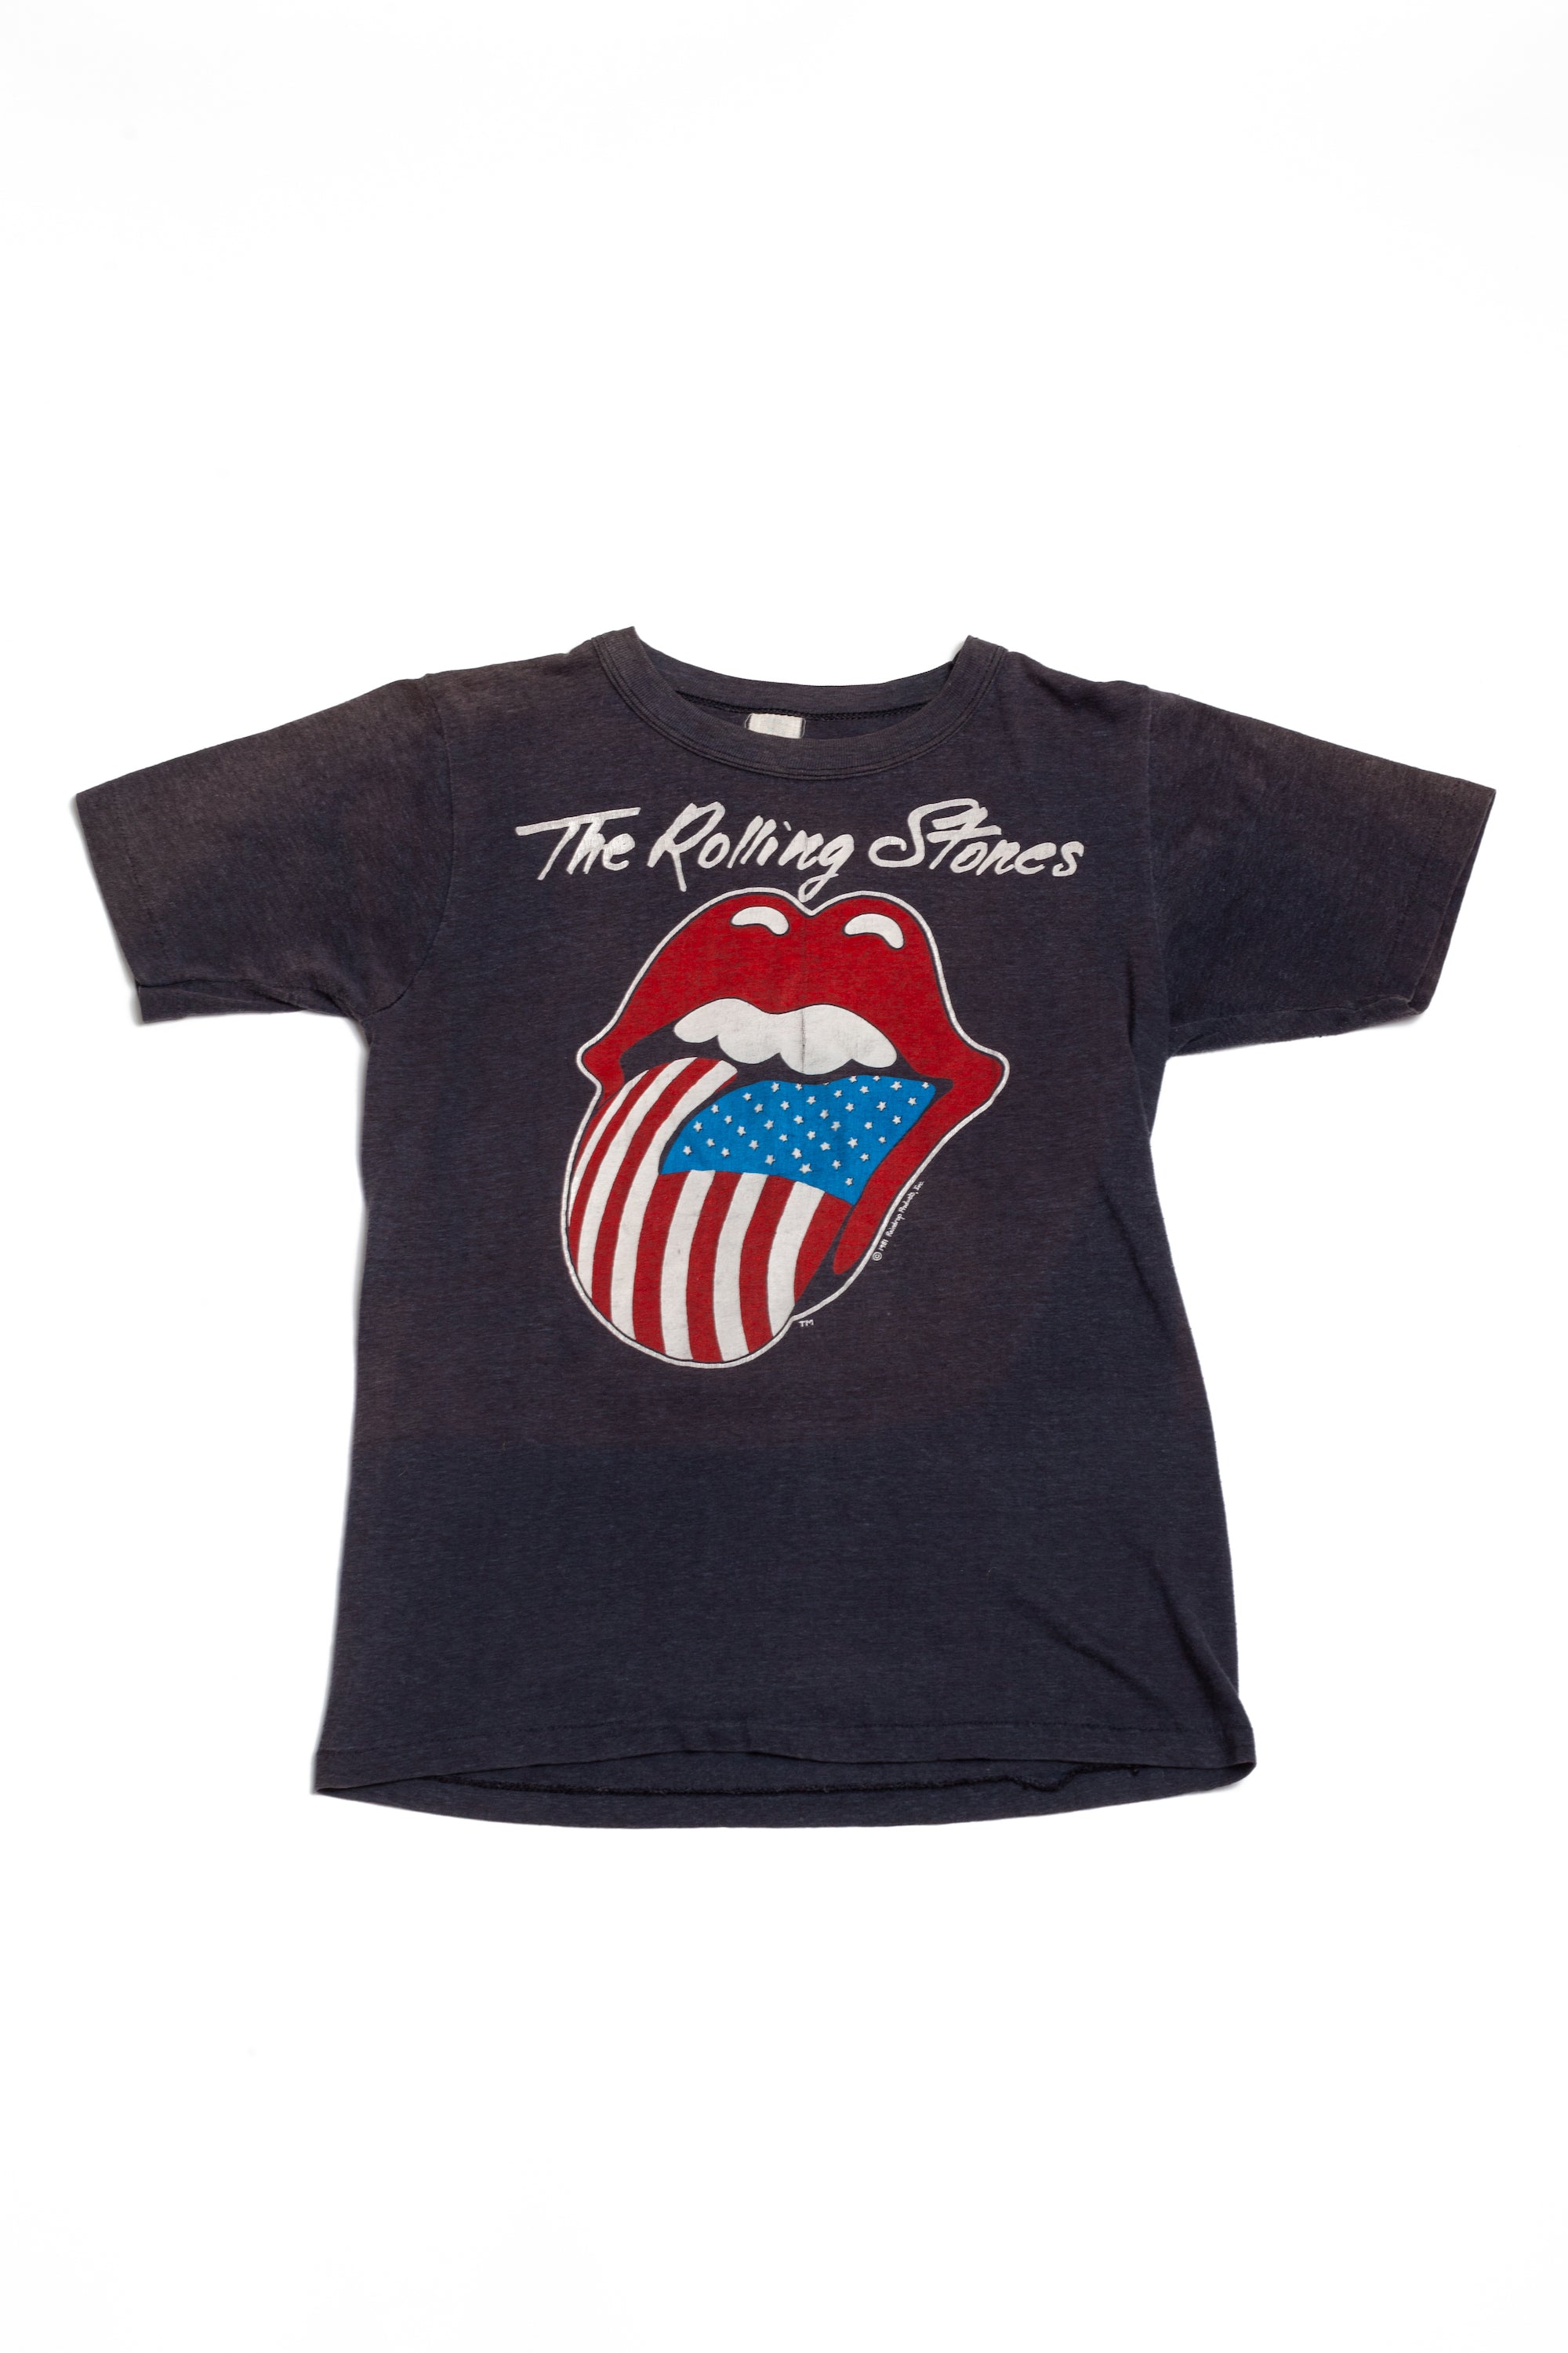 Vintage <br> 1981 The Rolling Stones tour t-shirt